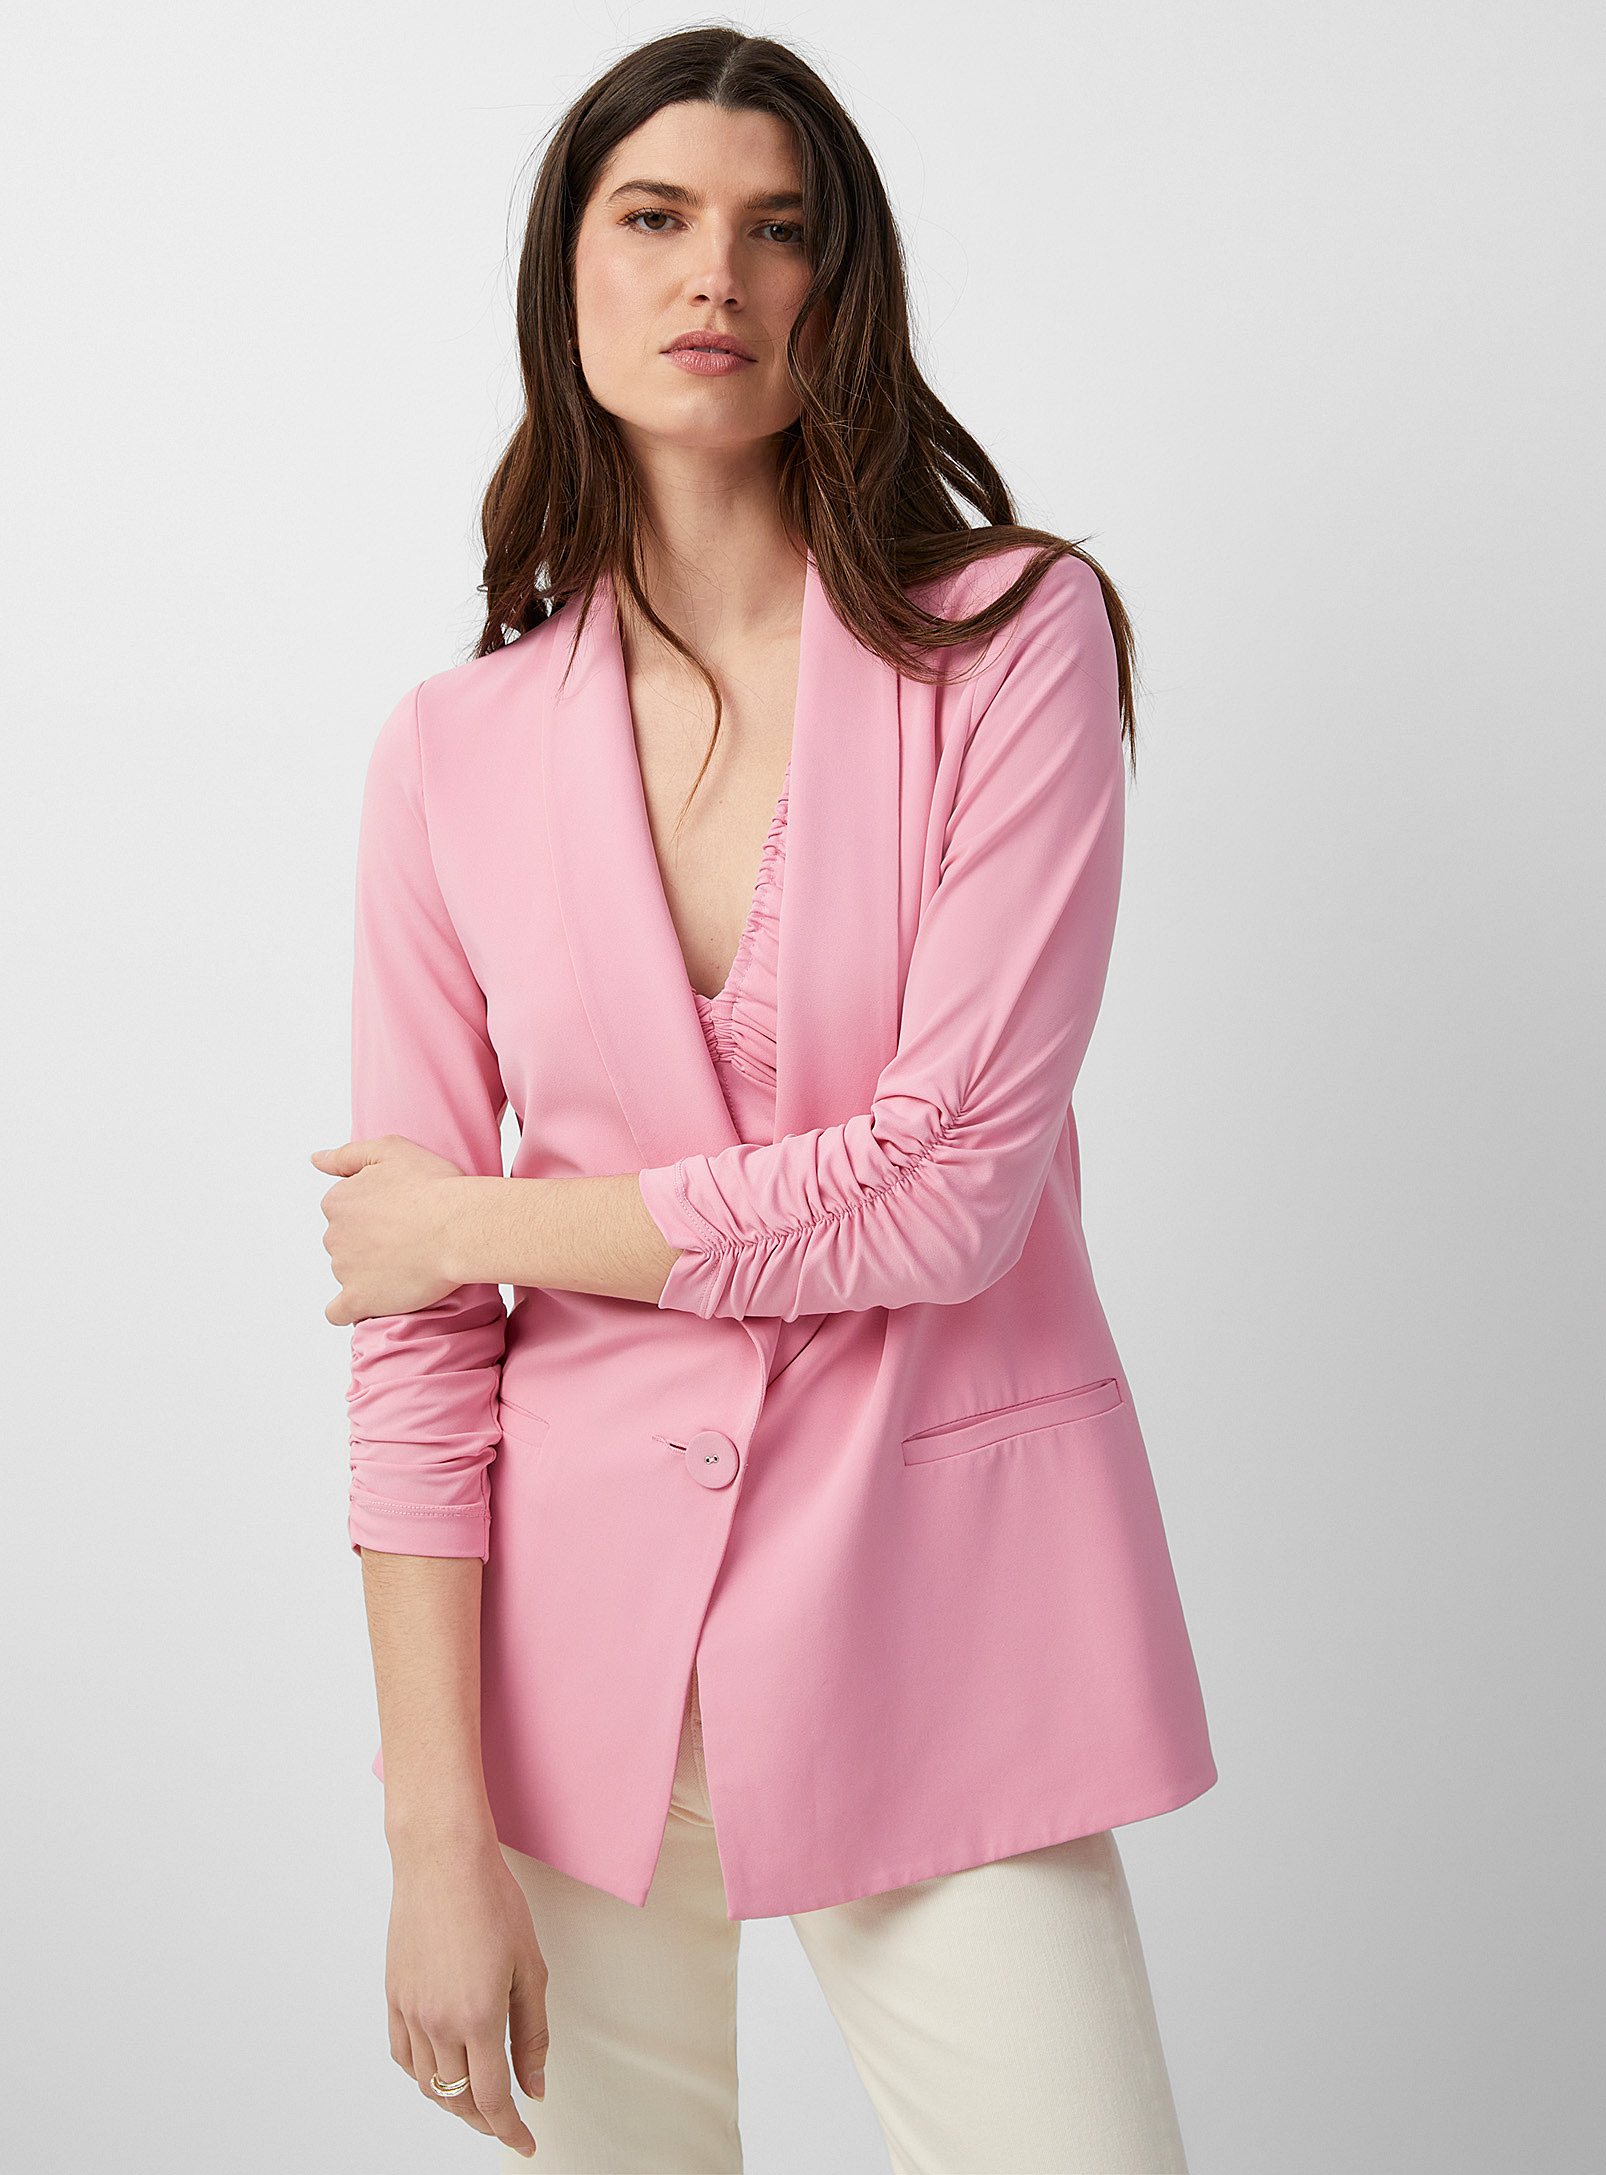 Iris Setlakwe - Gathered sleeves pink flowy Blazer Jacket